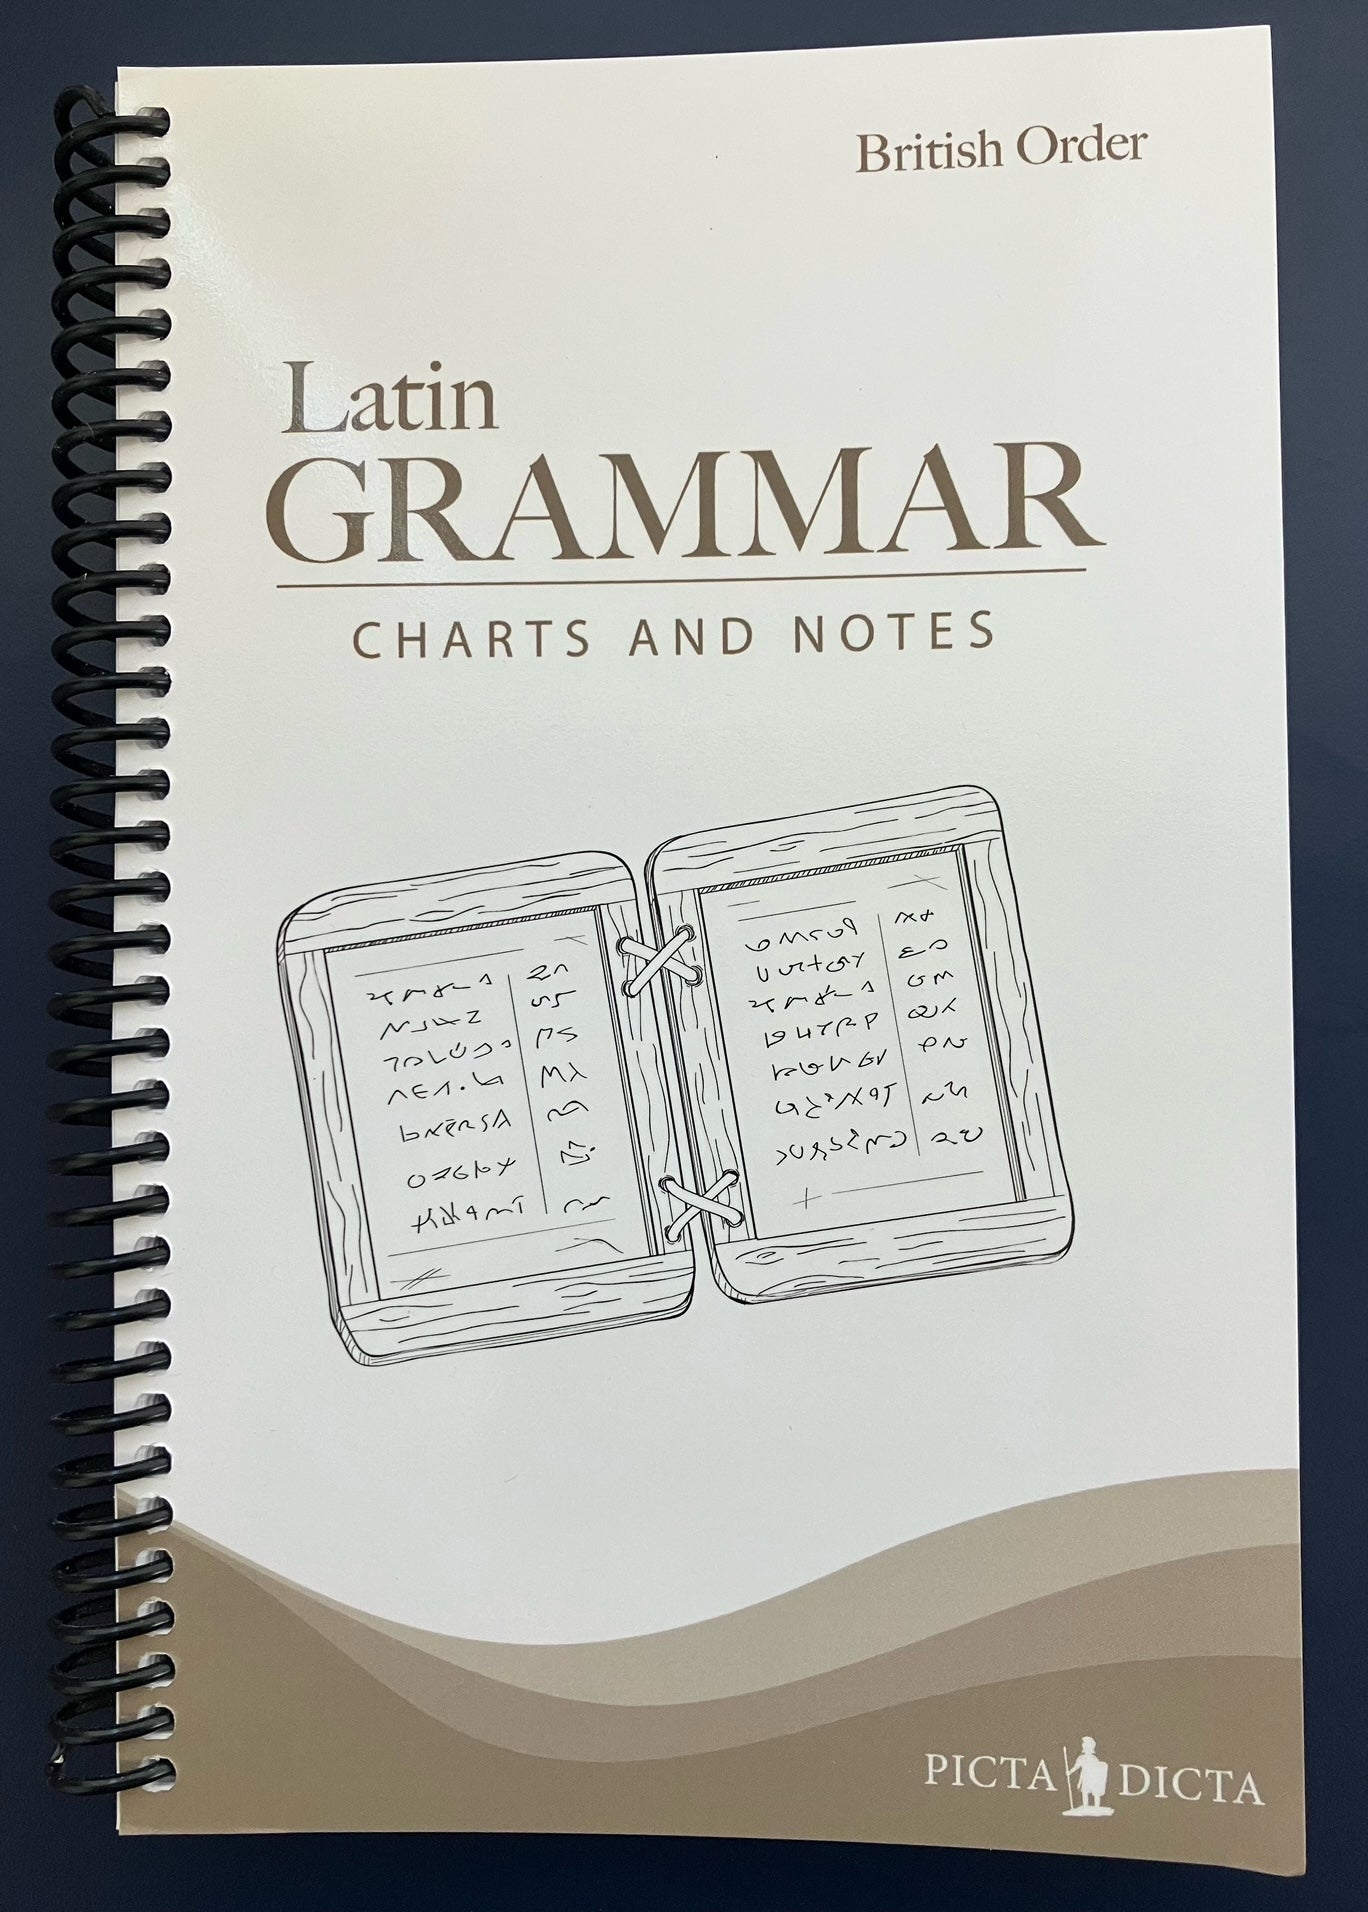 Latin Grammar Charts and Notes: British Order